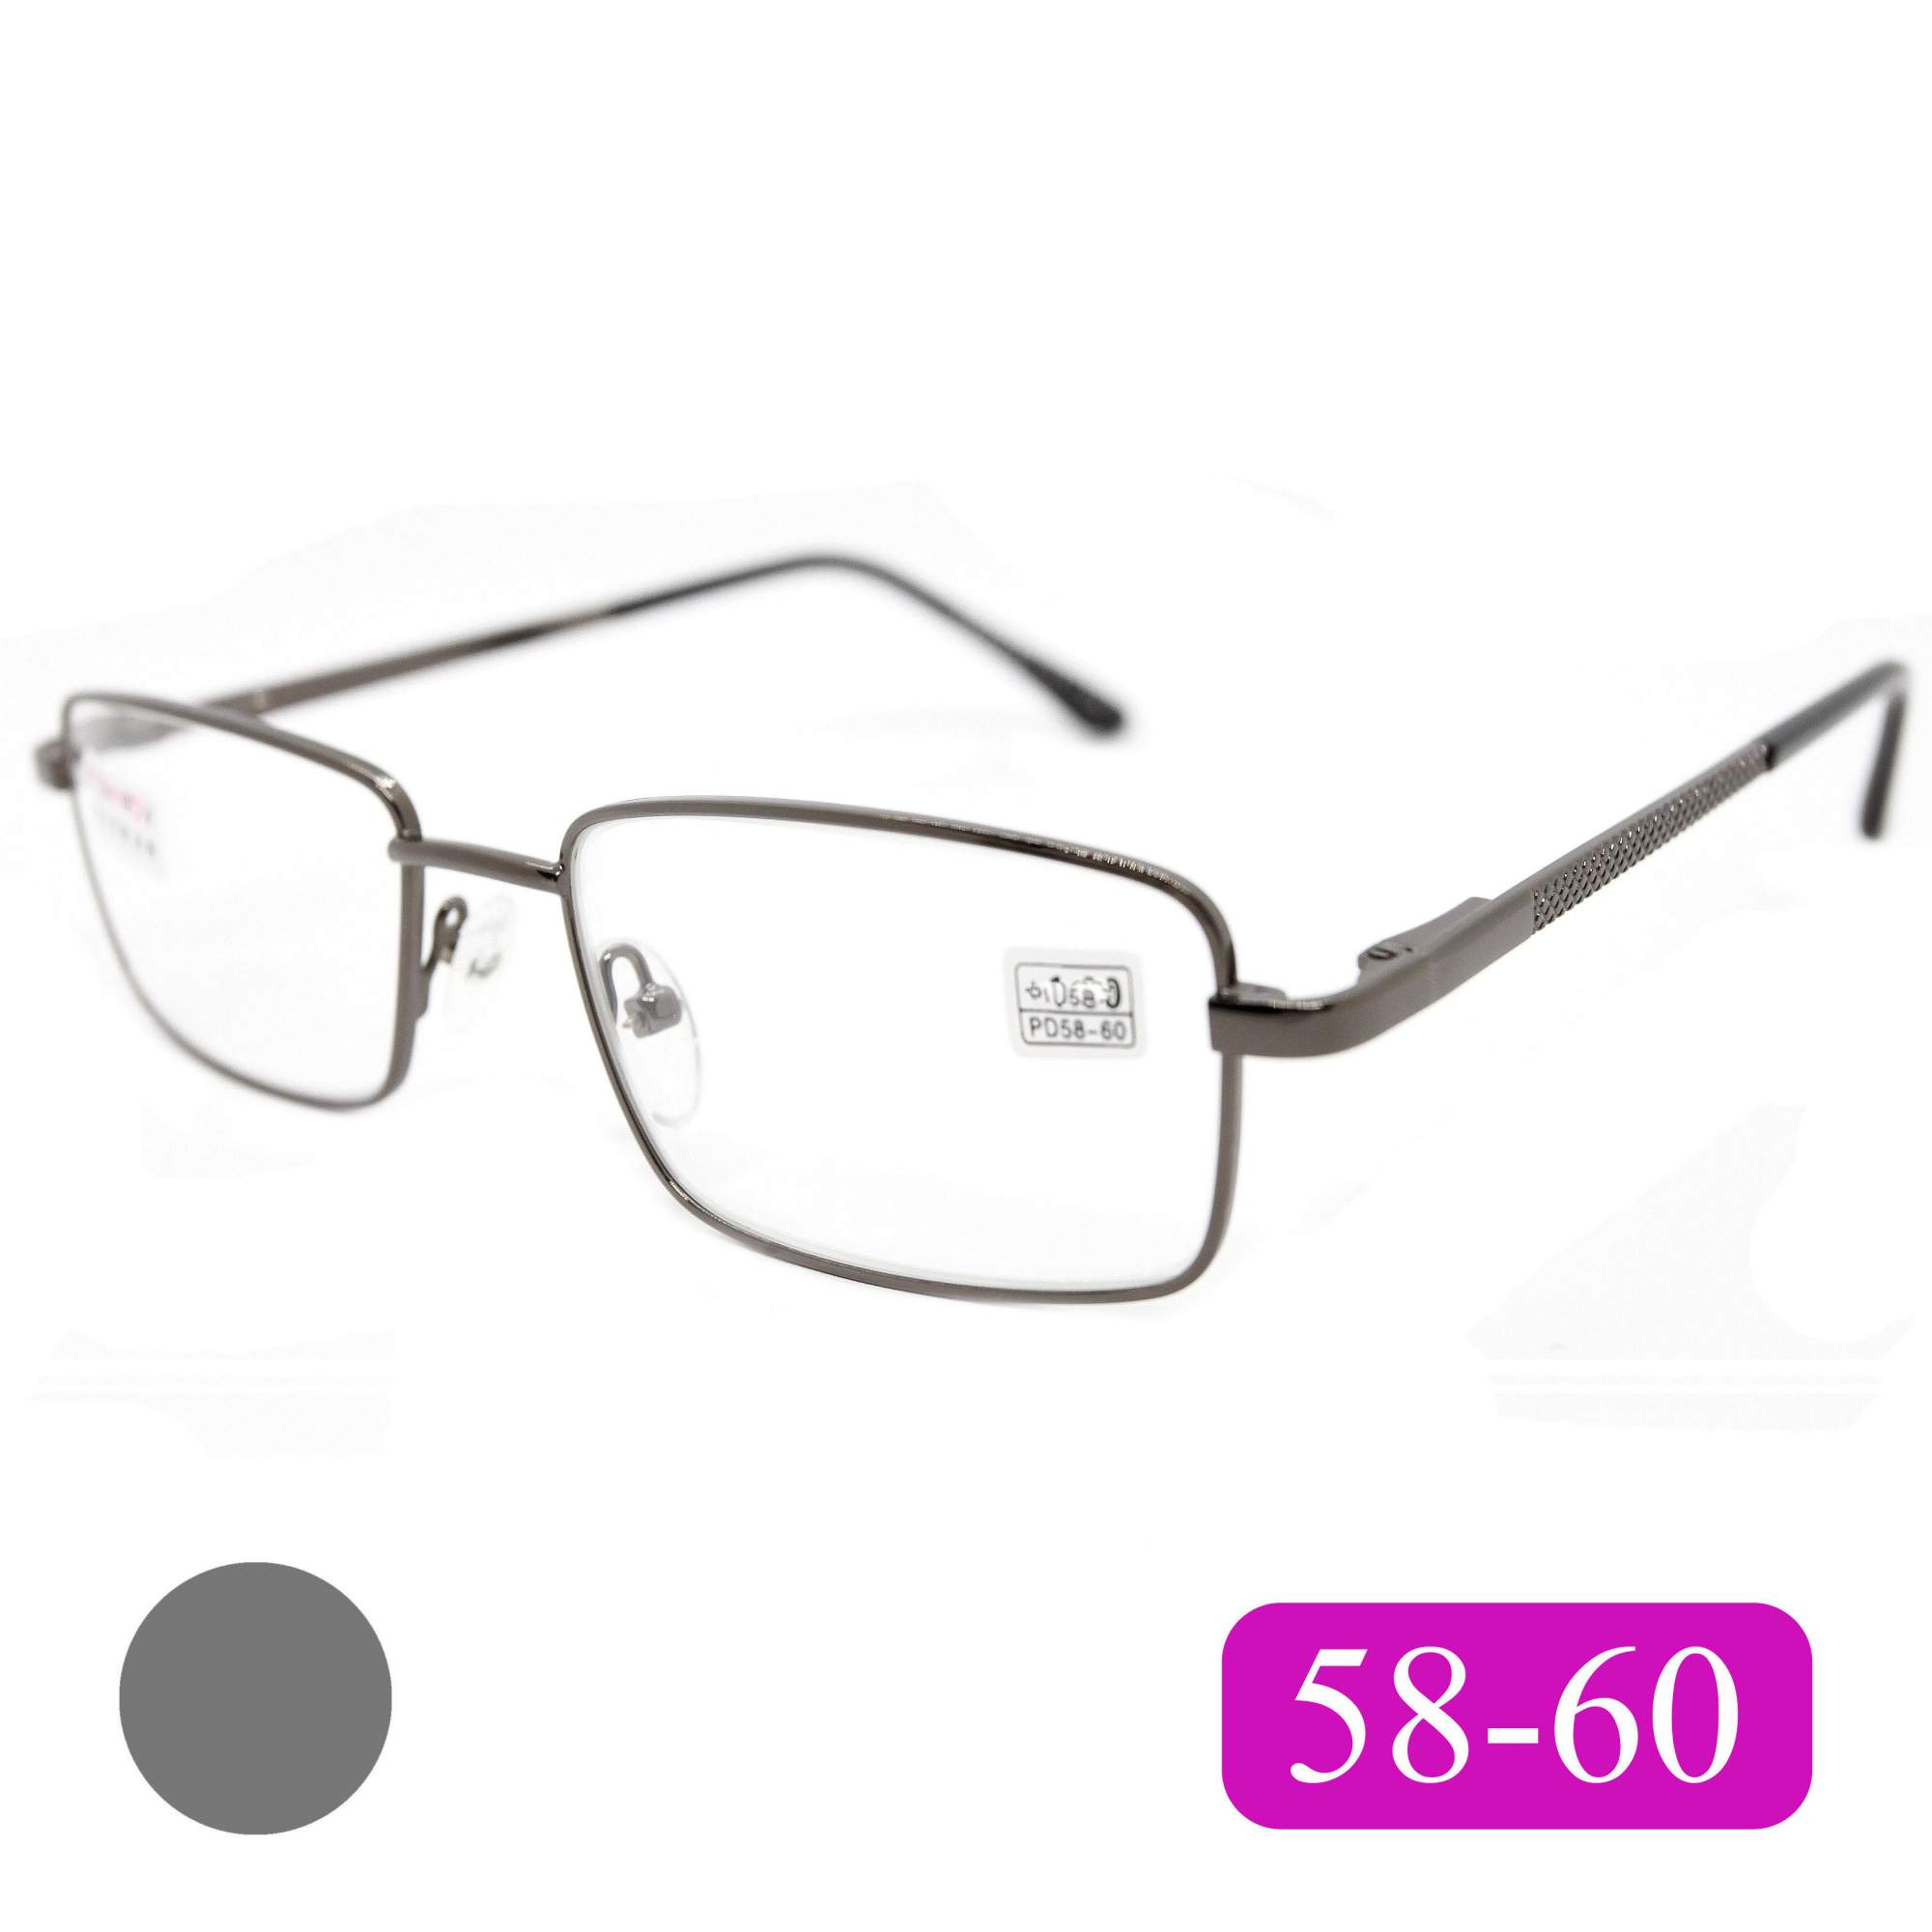 Готовые очки Fedrov 569, со стеклянной линзой, +2,50, без футляра, цвет серый, РЦ 58-60